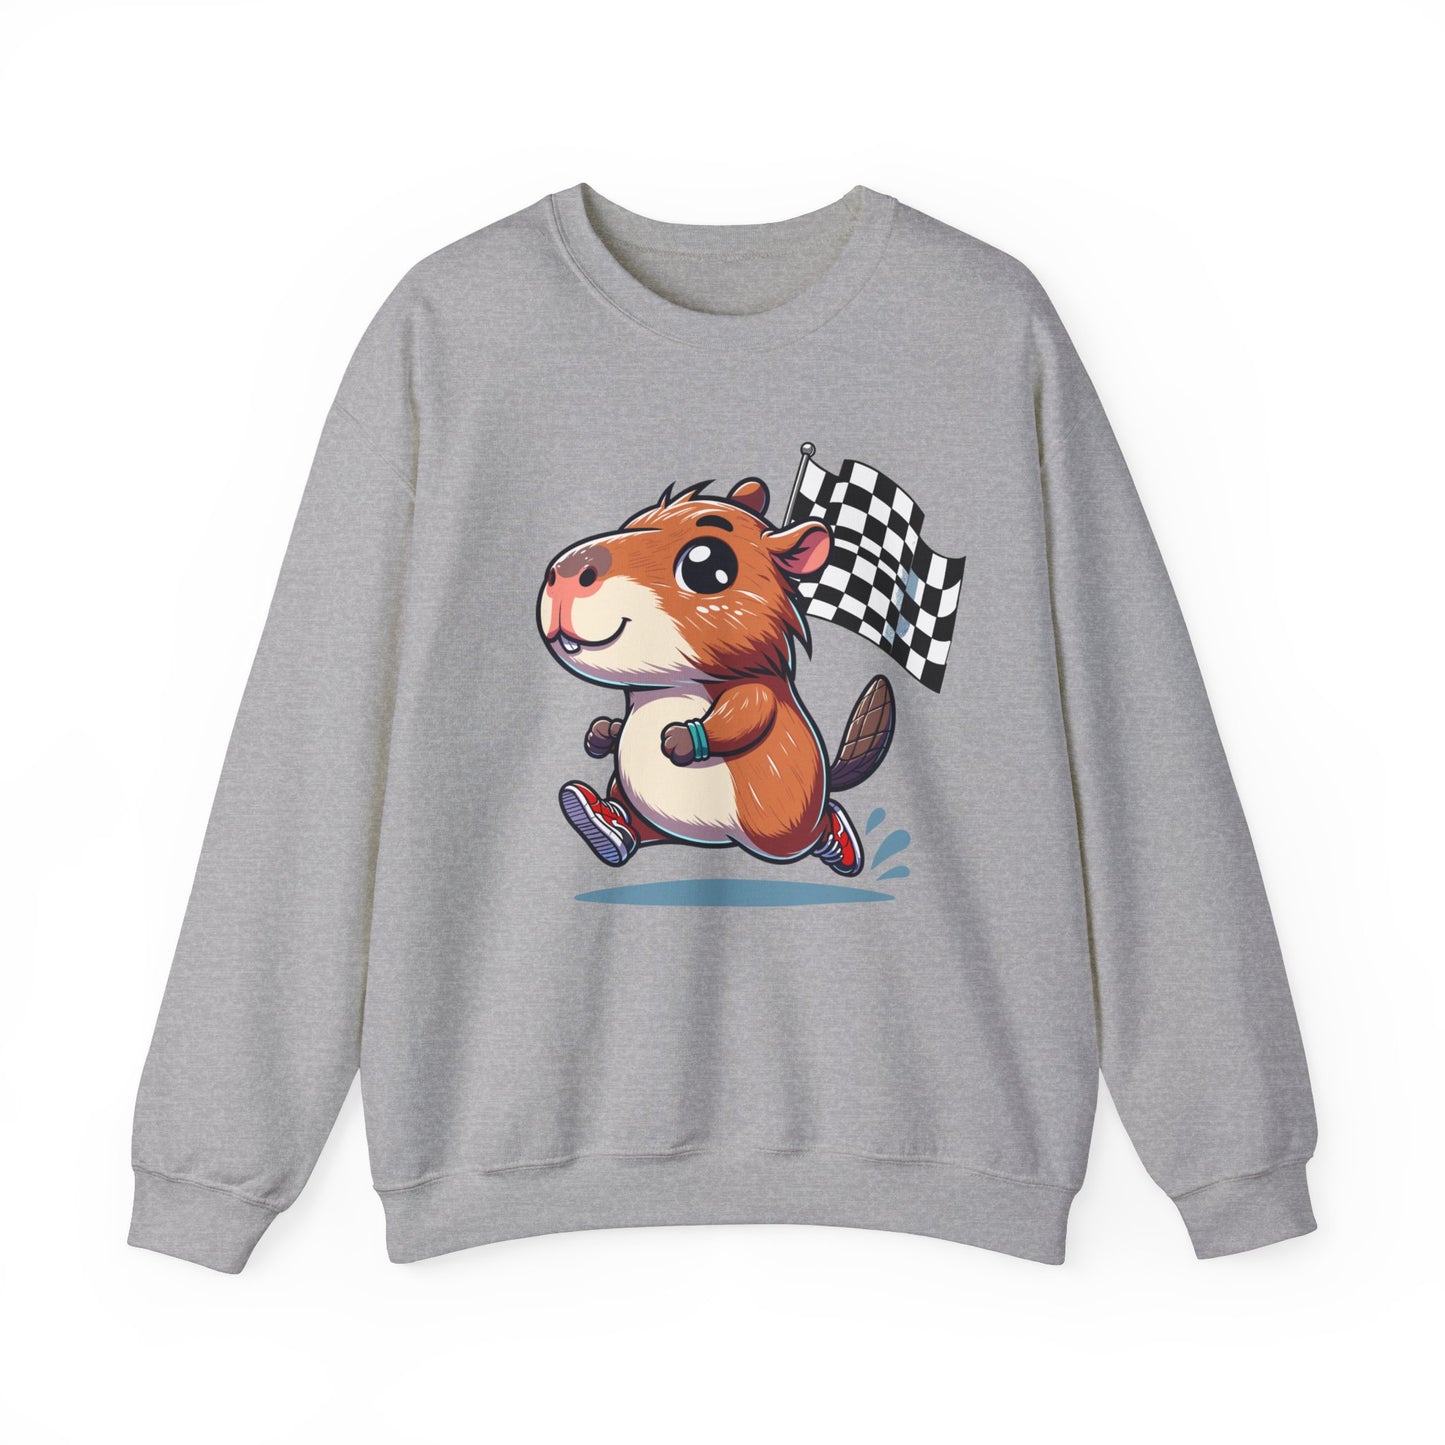 Capybara Never Did Come In Last Crewneck Sweatshirt